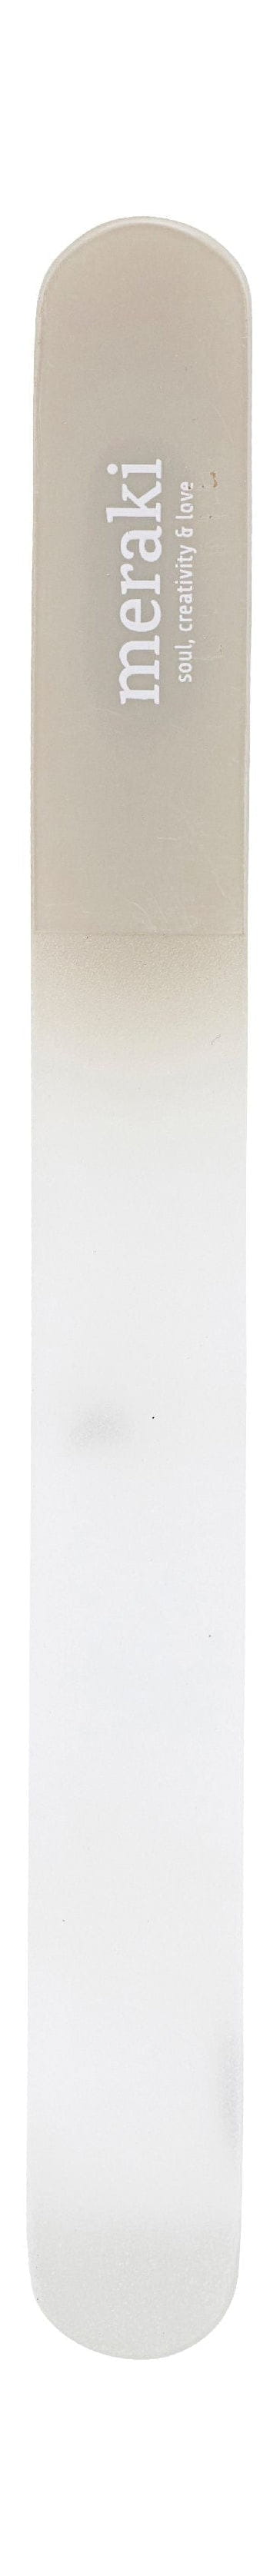 Meraki nehtový soubor 19,4 cm, šedá